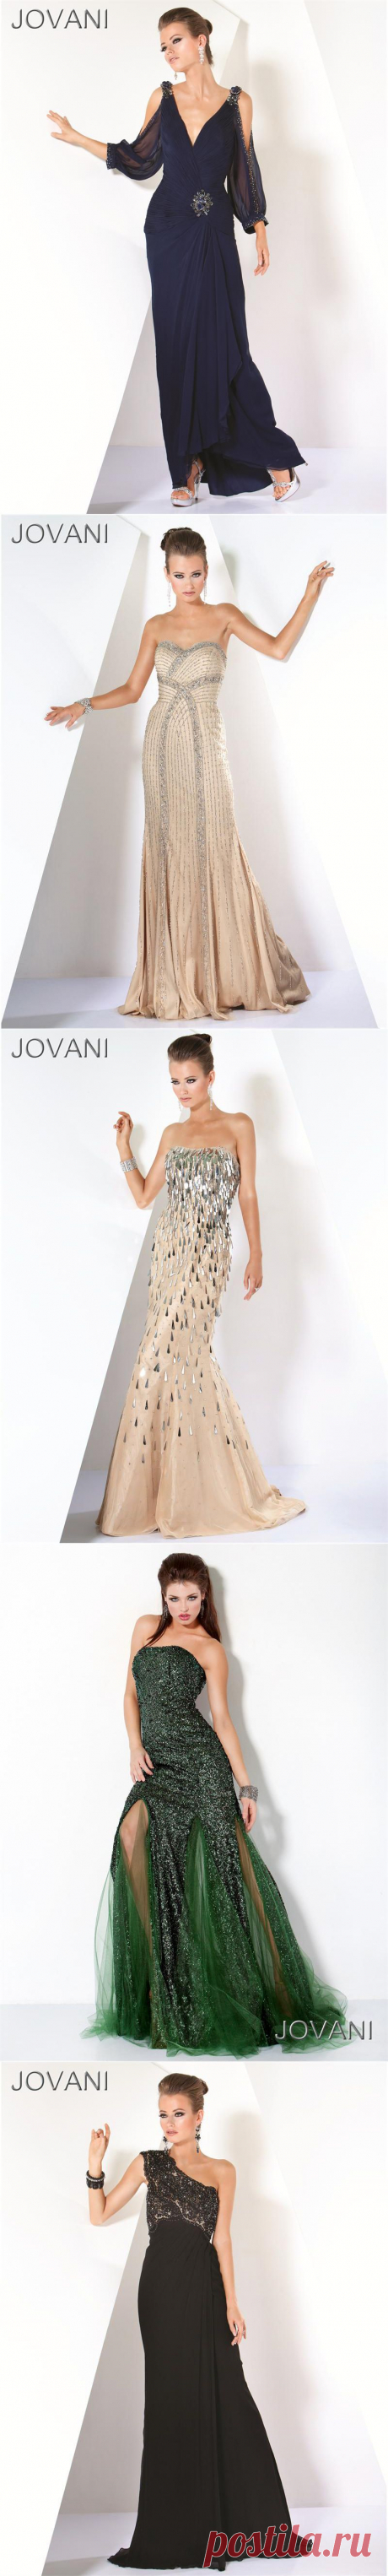 Дизайнерские платья - Jovani (новая коллекция) 2012